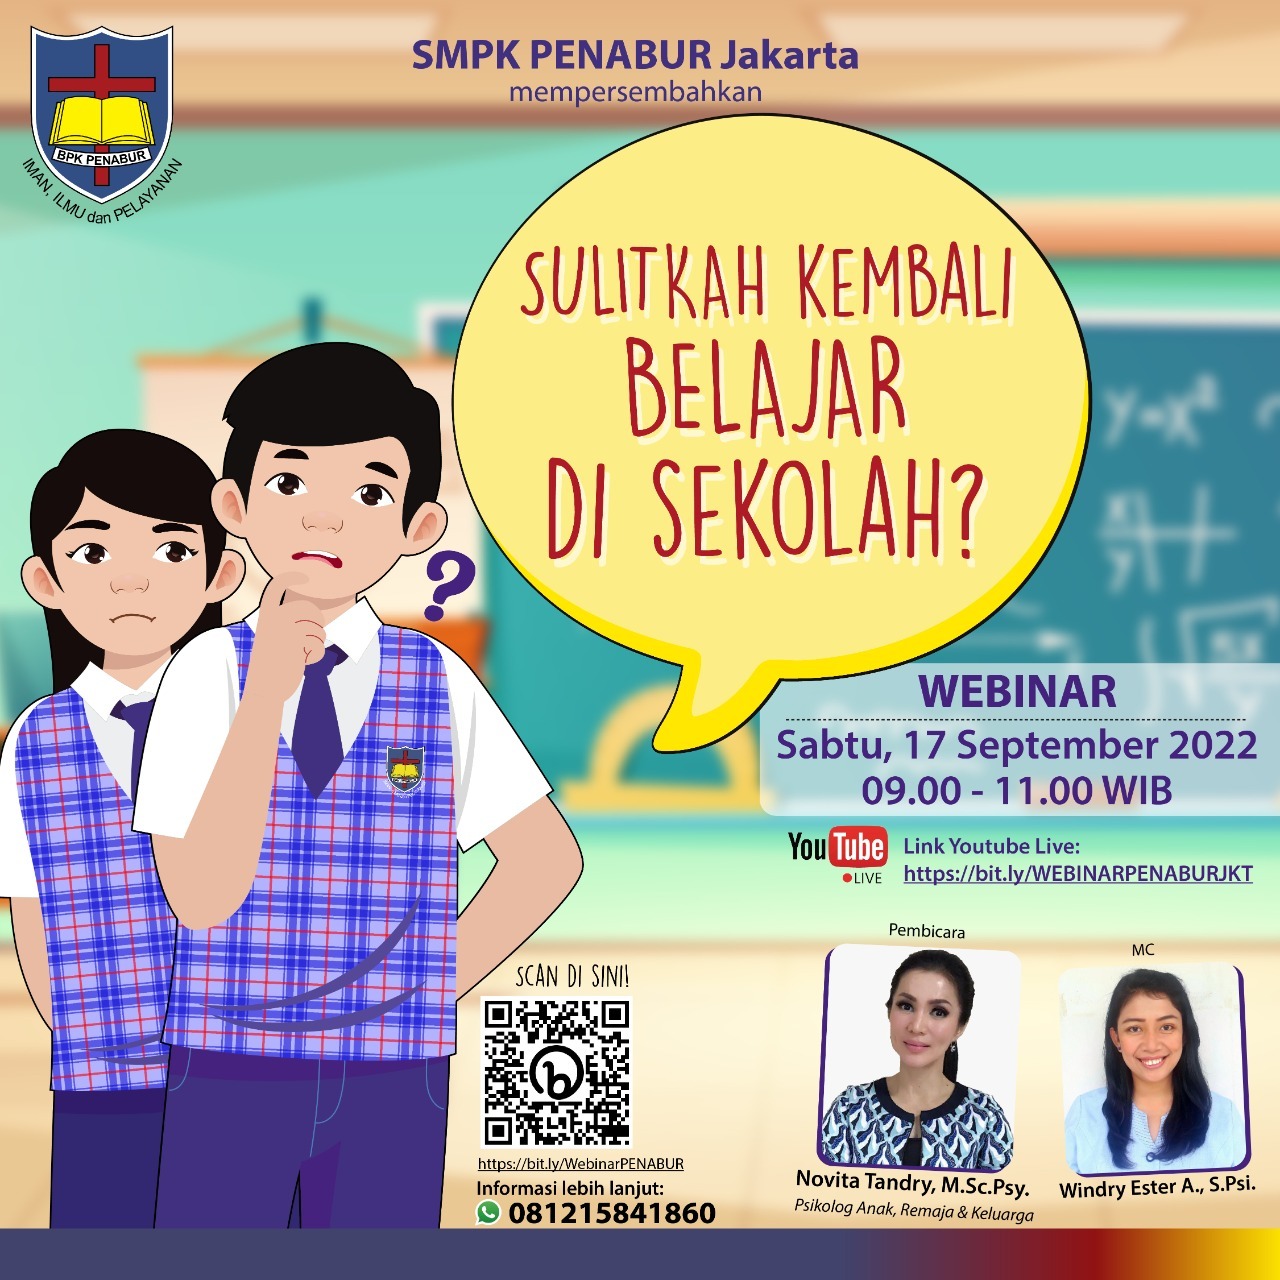 Webinar SMPK PENABUR Jakarta dengan topik “Sulitkah kembali belajar di Sekolah?”.